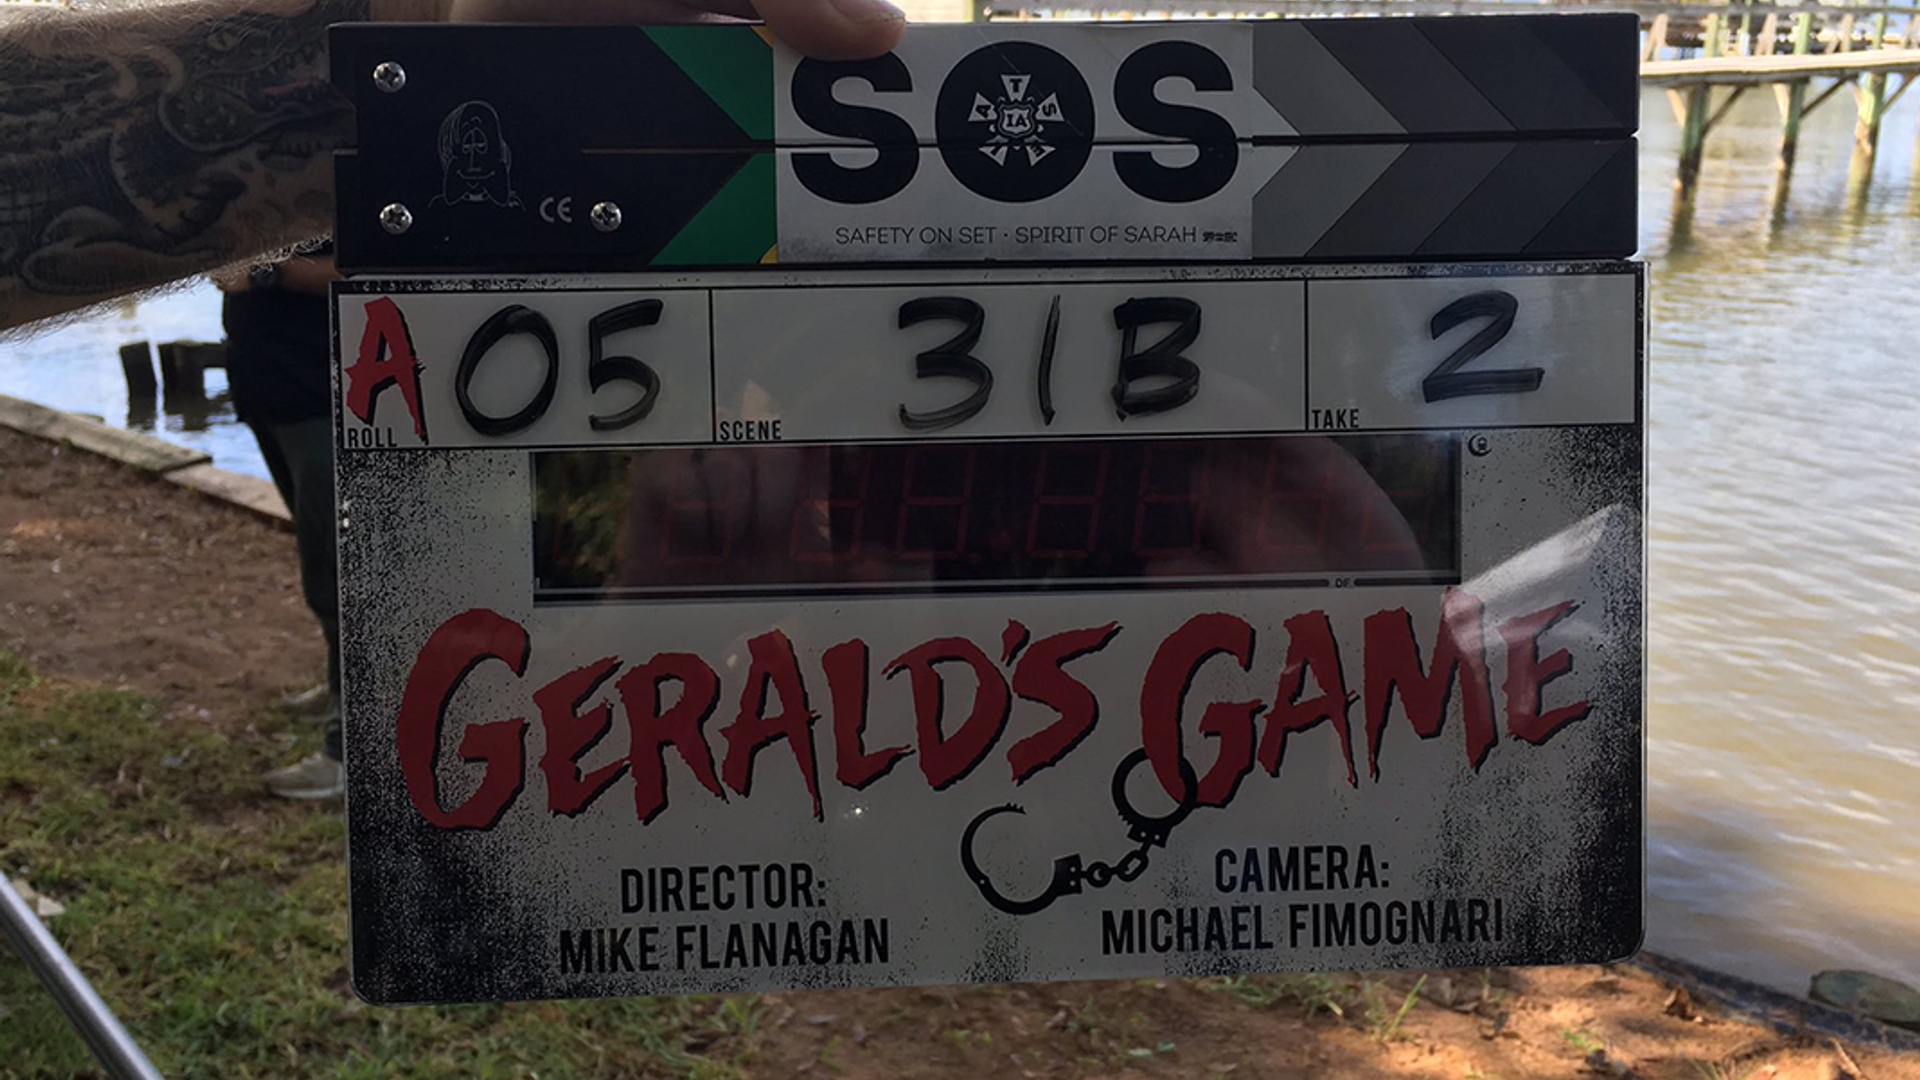 Geralds-Game-movie-1